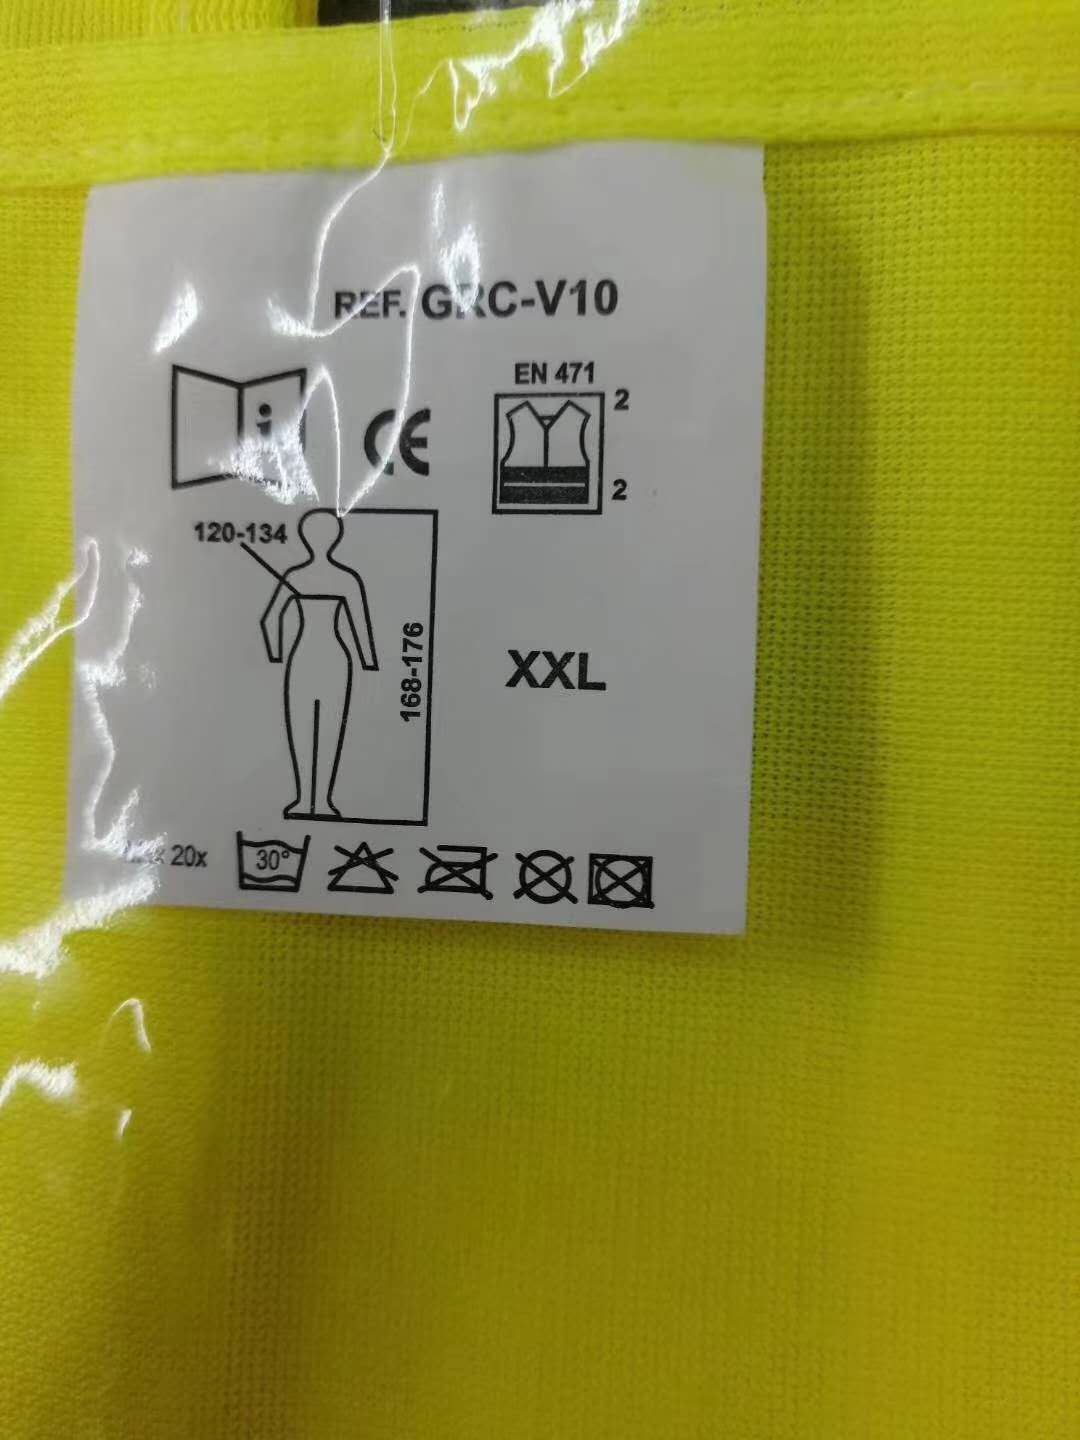 41109 - Reflective safety vest China